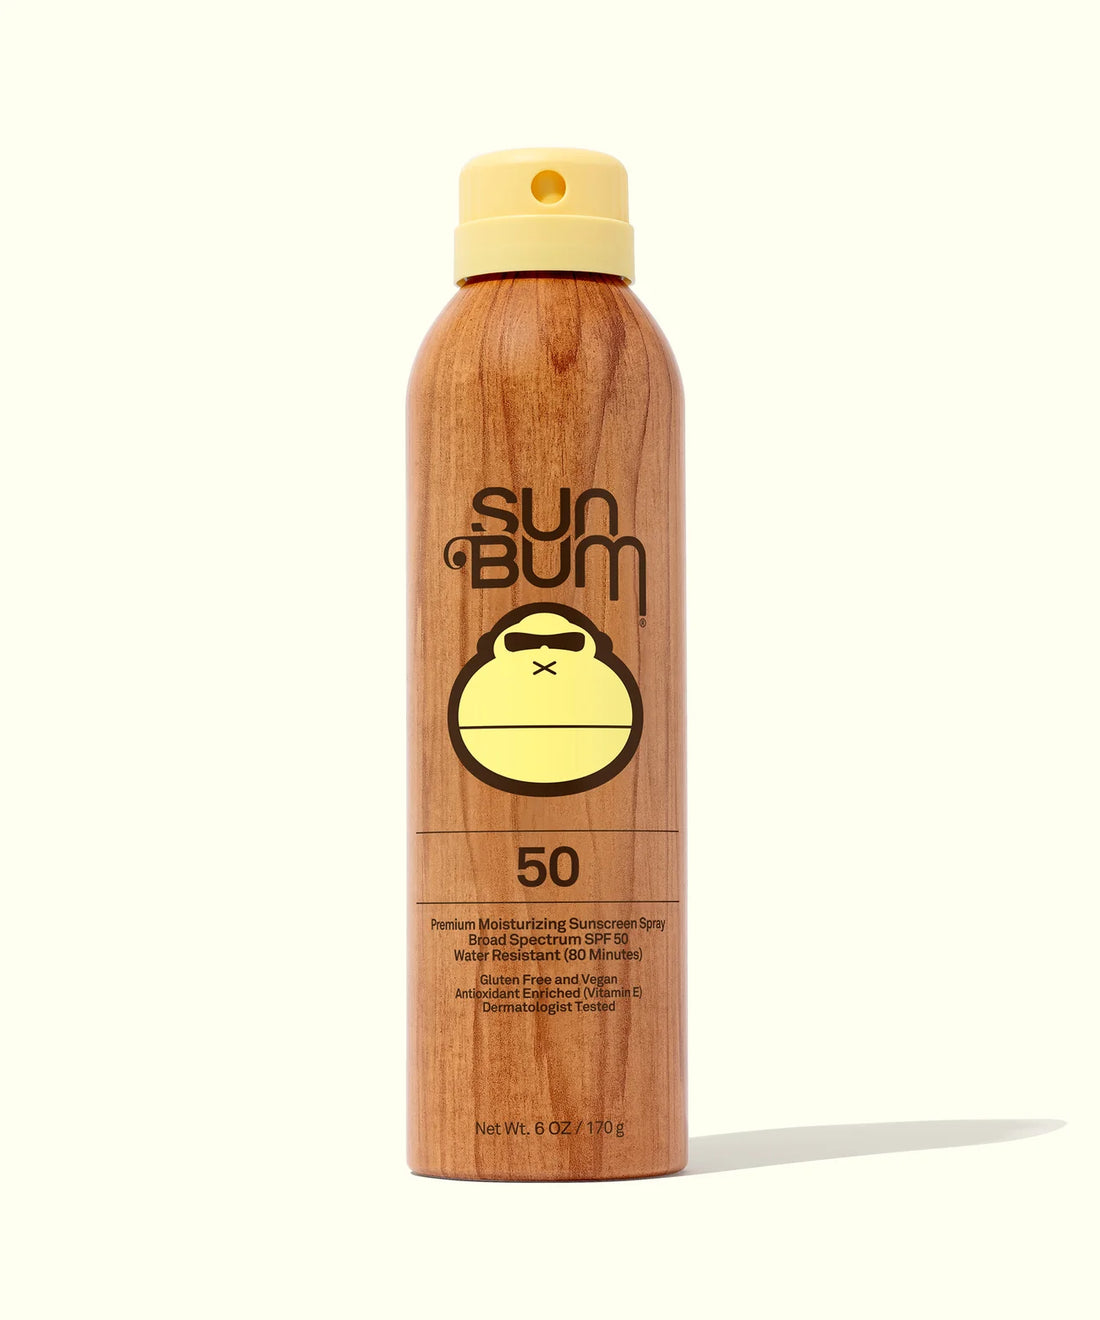 Sum Bum Original Sunscreen Spray